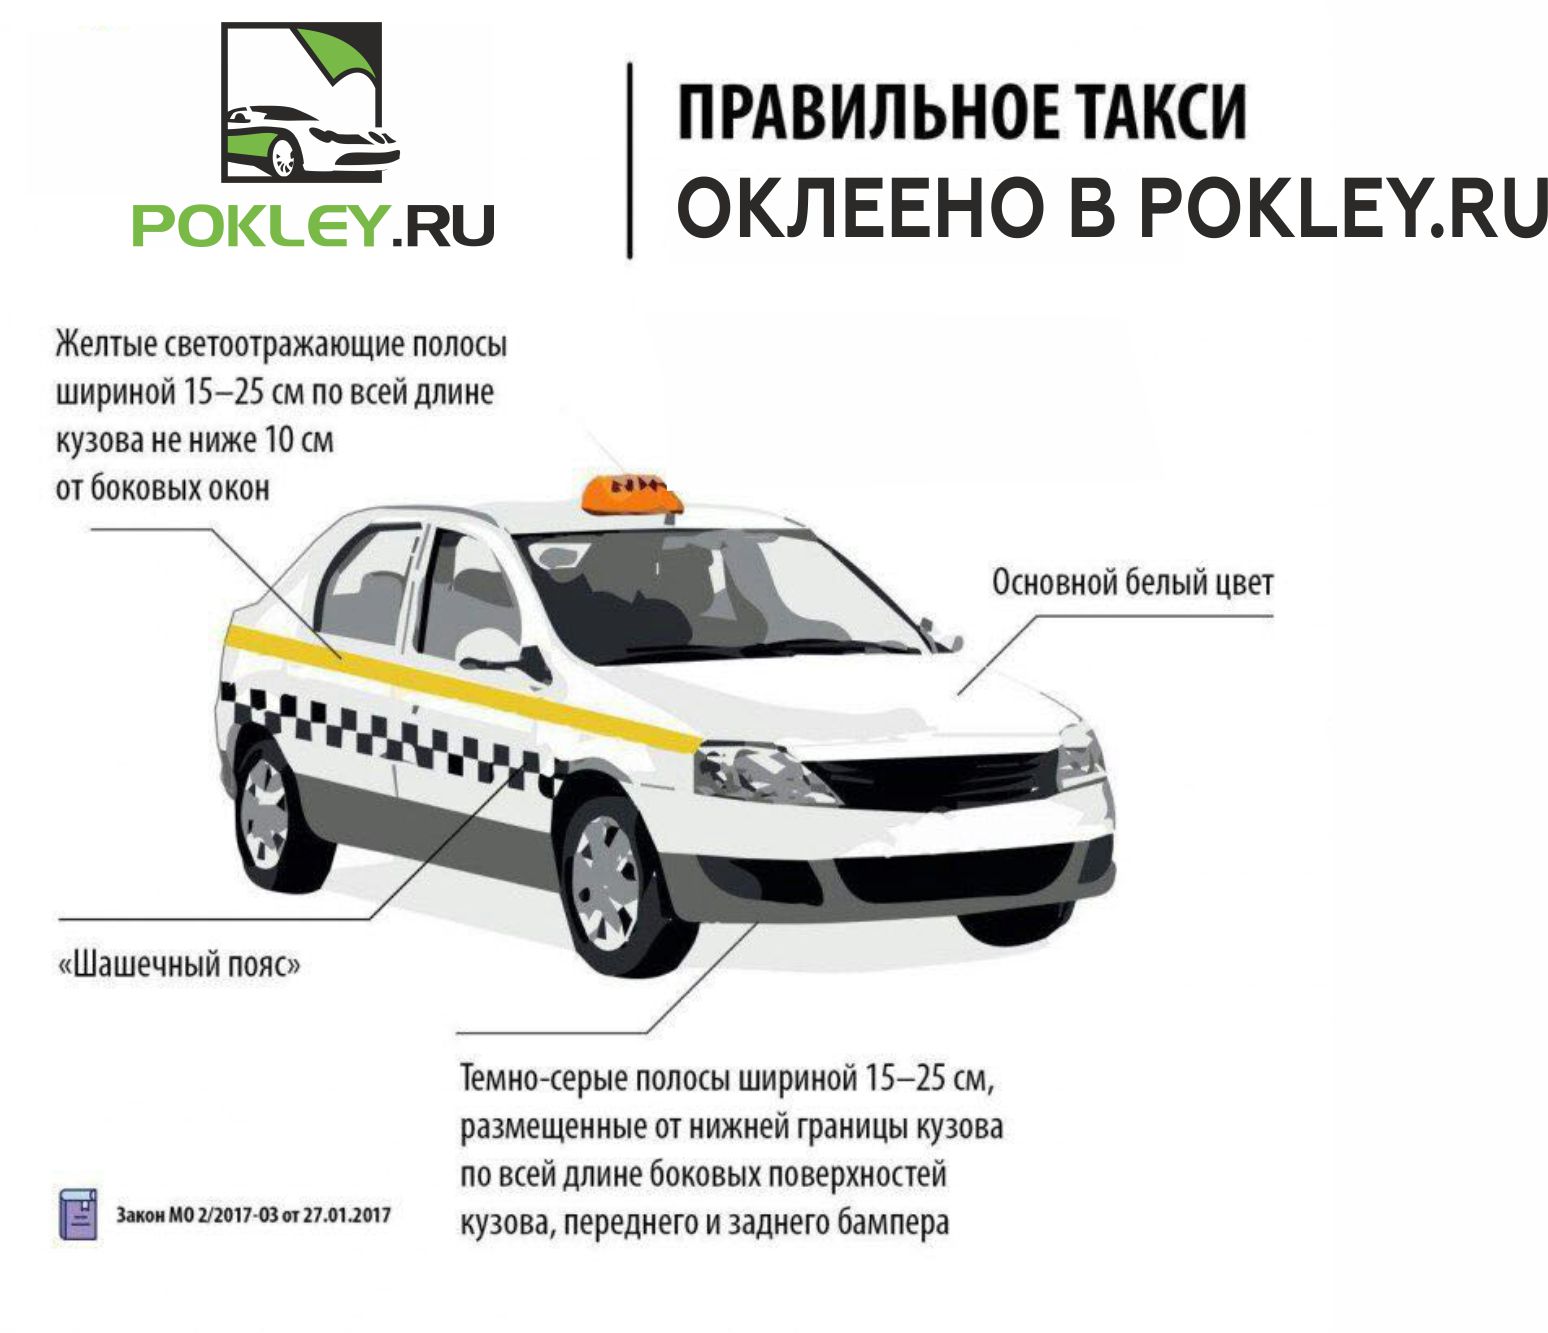 Проверить машину такси по номеру. ГОСТ такси Московской области. ГОСТ оклейка такси. Стандарт оклейки такси. Требования к оклейки такси.